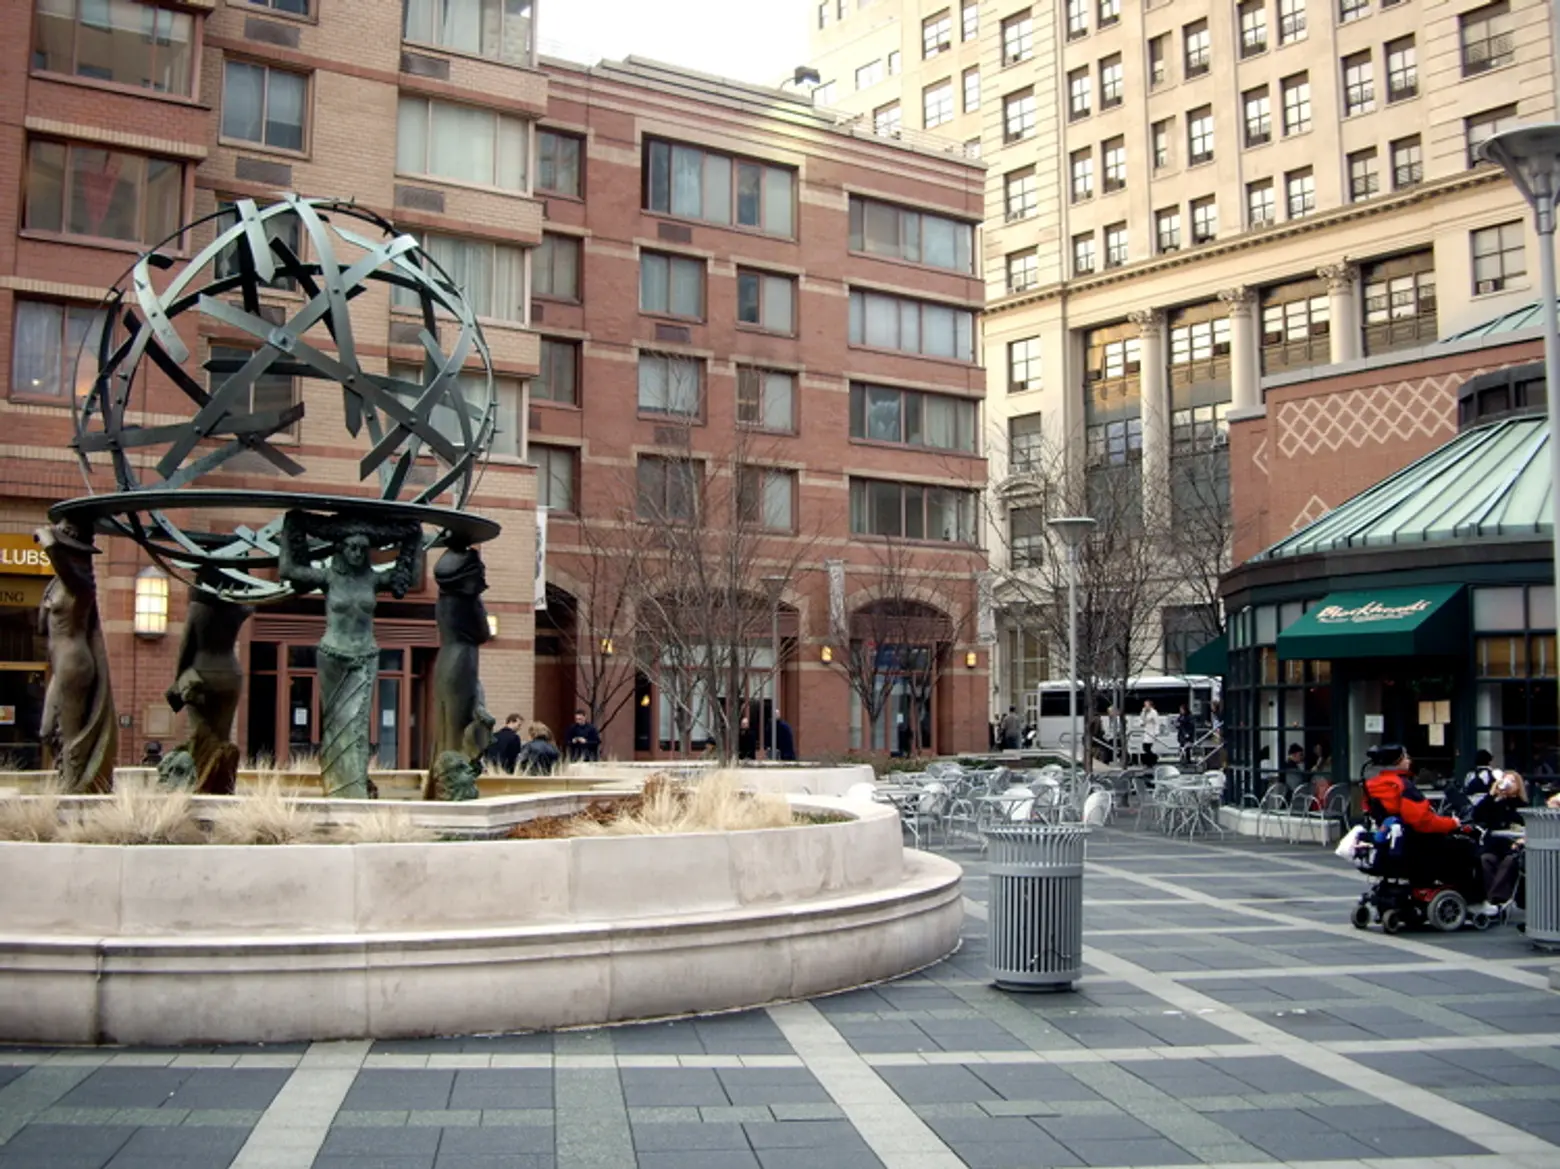 Worldwide plaza fountain